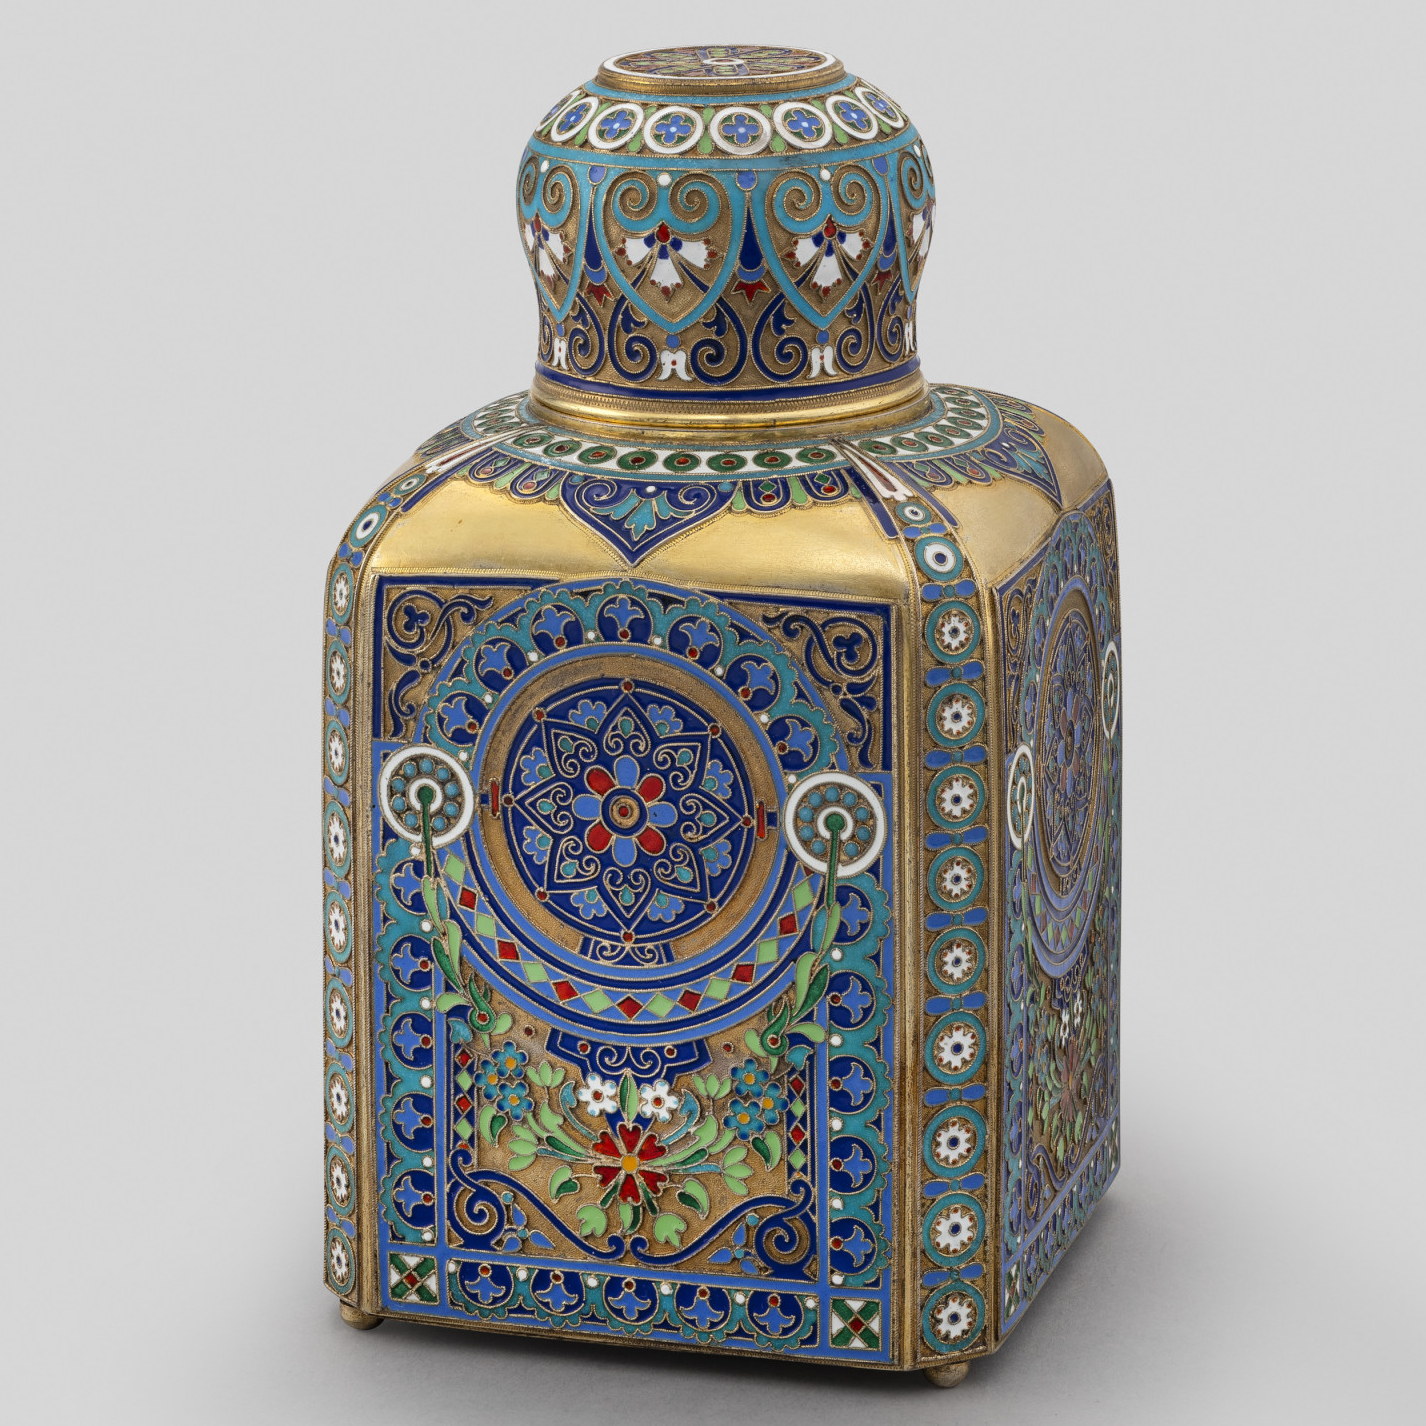 Russian Silver Enamel tea-caddy by Antip Kuzmichev for Tiffany